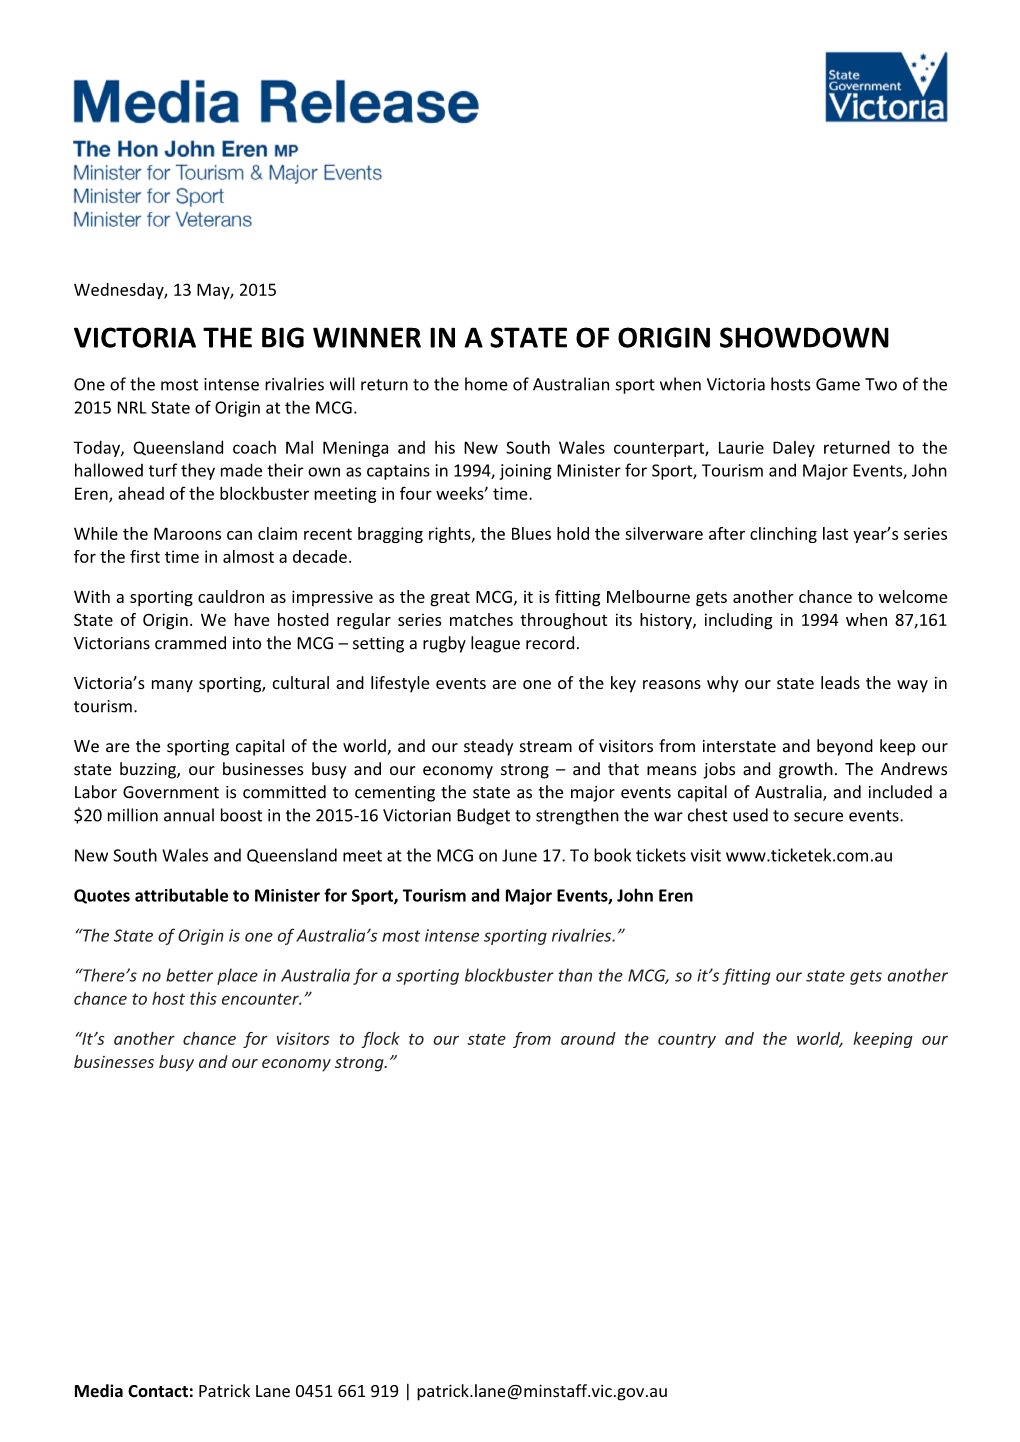 Victoria the Big Winner in a State of Origin Showdown